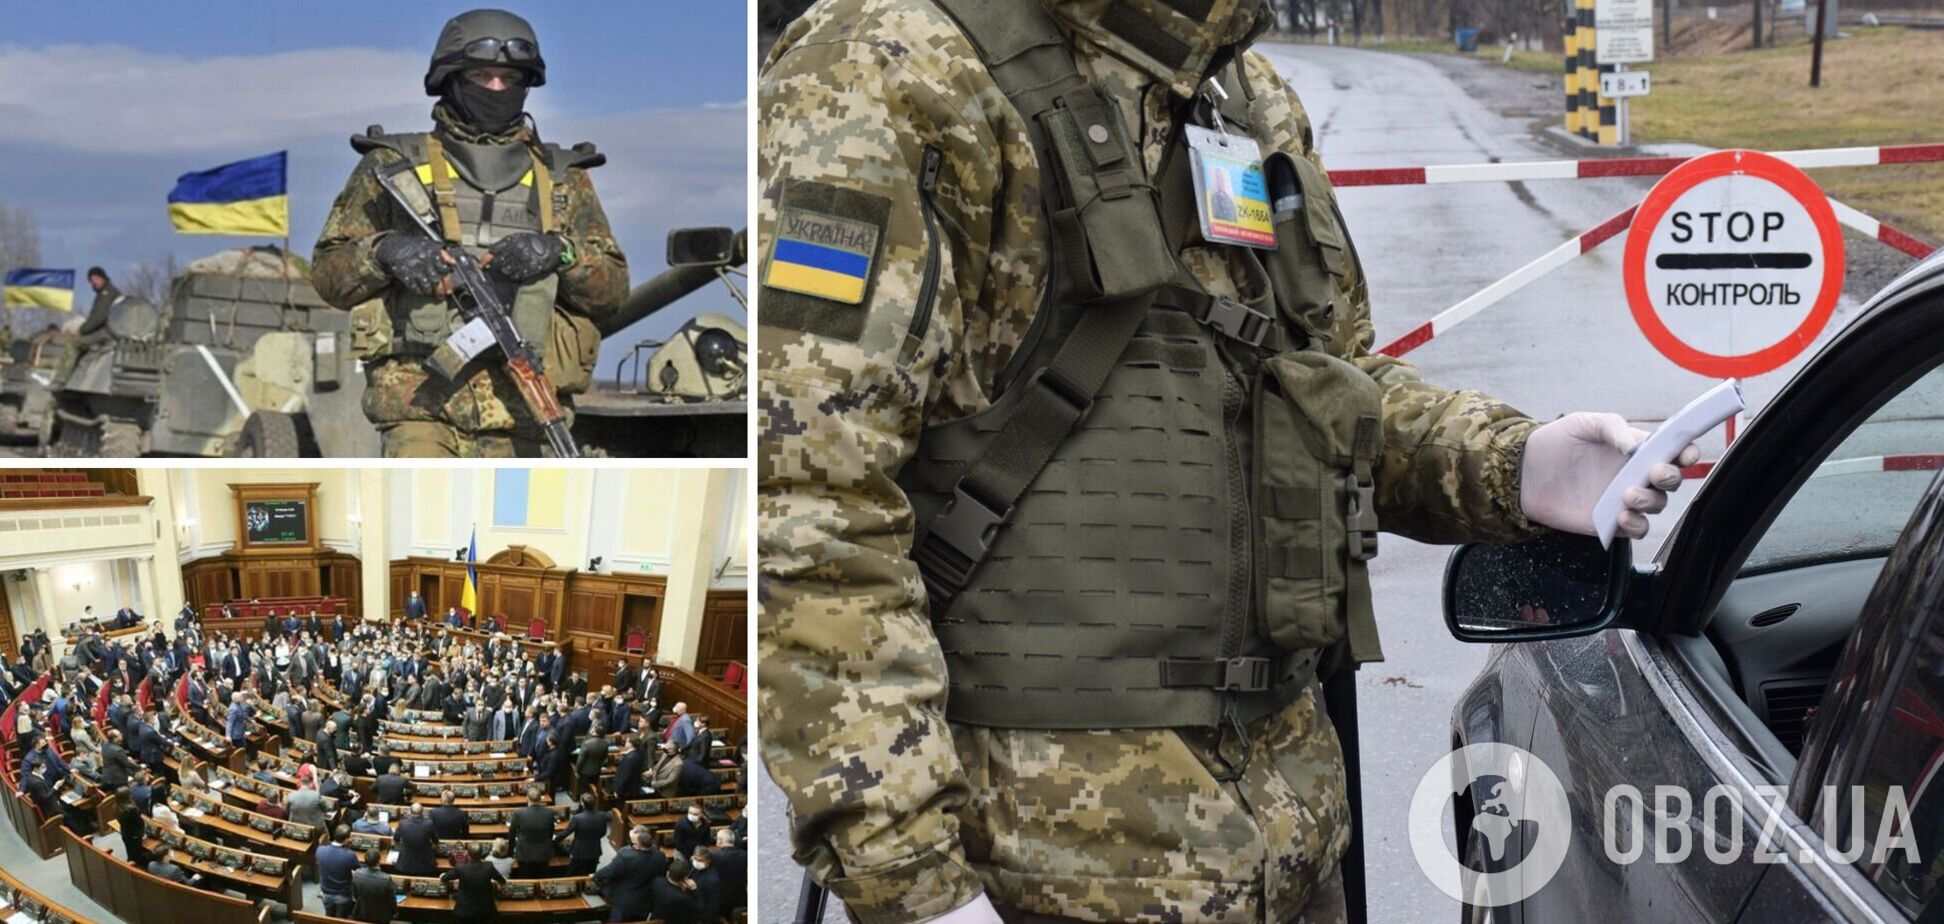 Усіх військовозобов'язаних, які виїхали з України, запропонували терміново повертати: інакше 10 років в'язниці. Законопроєкт